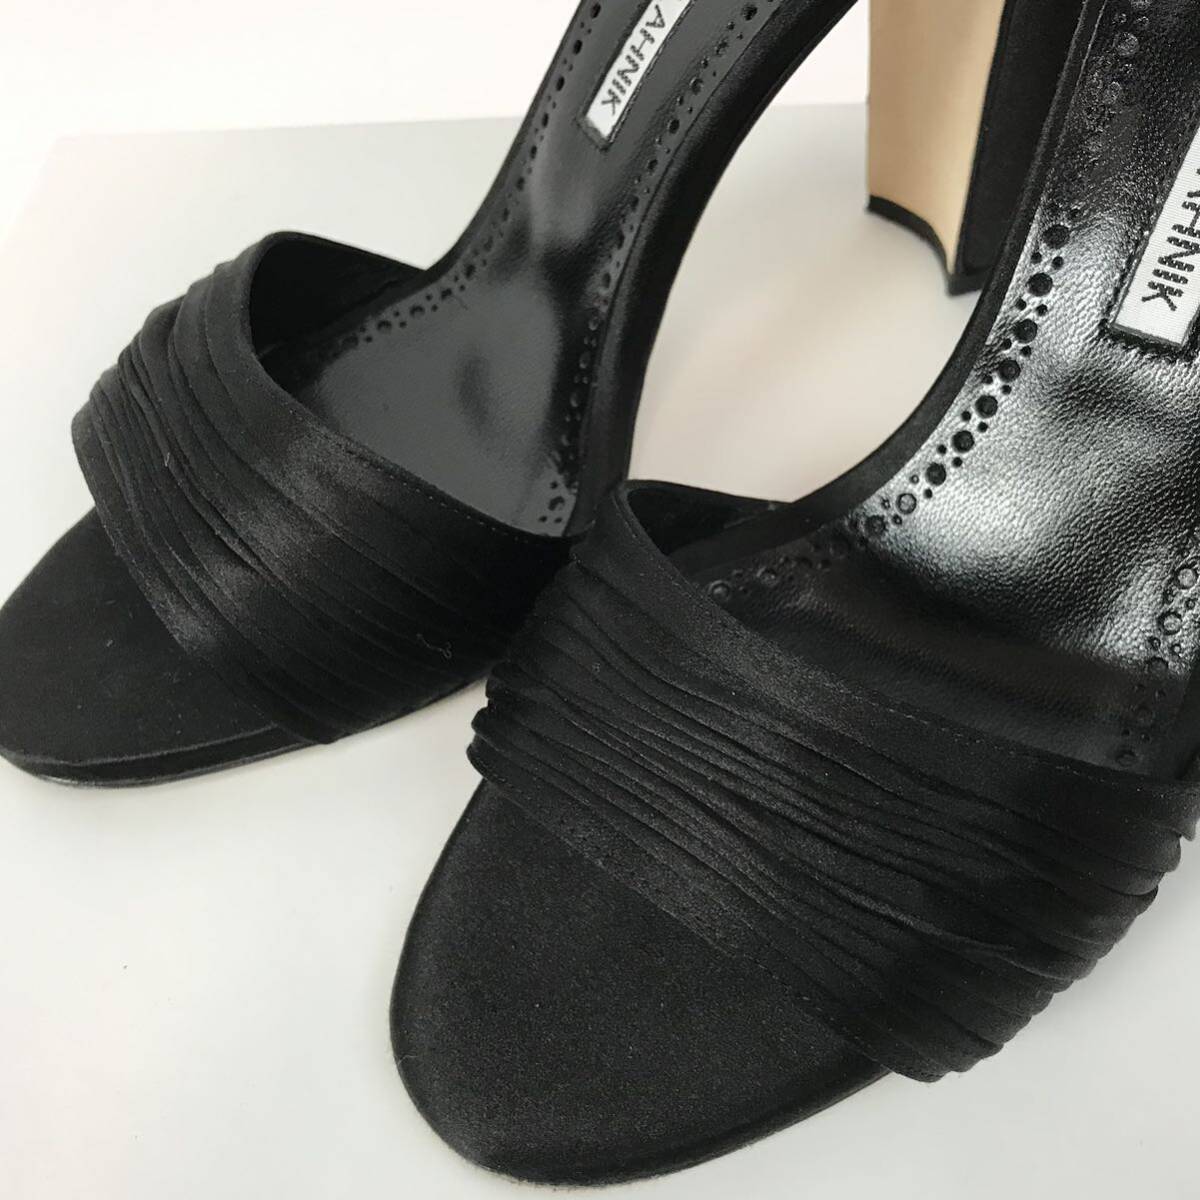 j248 прекрасный товар симпатичный MANOLO BLAHNIK Manolo Blahnik атлас лента сандалии формальный черный обувь формальный 37 Италия производства стандартный товар 